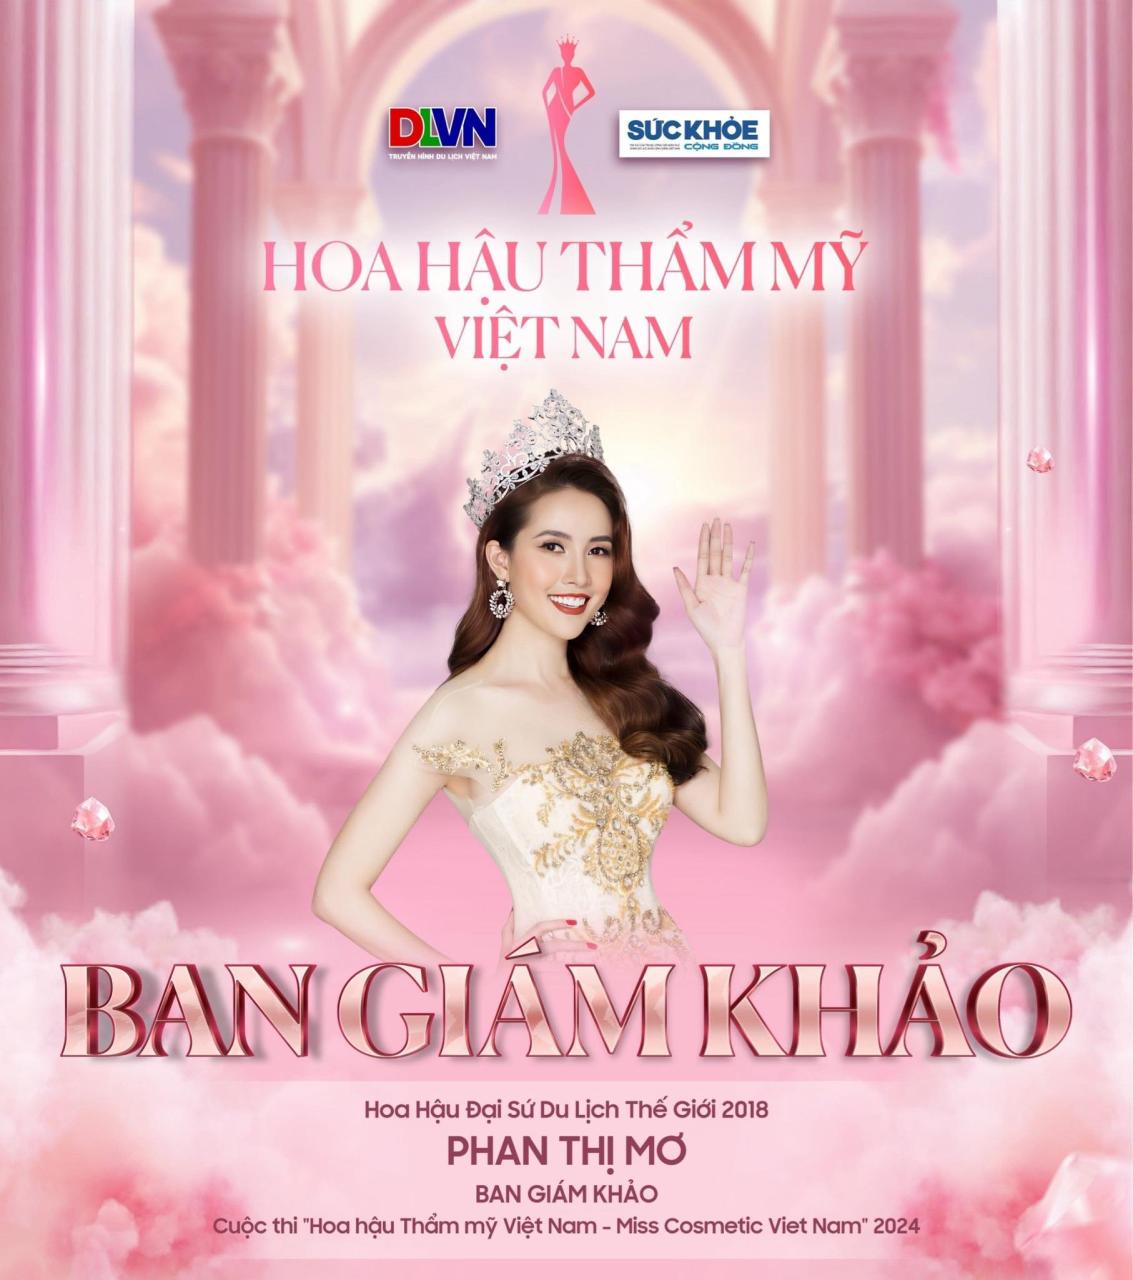 Hoa hau Tham my Viet Nam Miss Cosmetic Viet Nam 2024 4